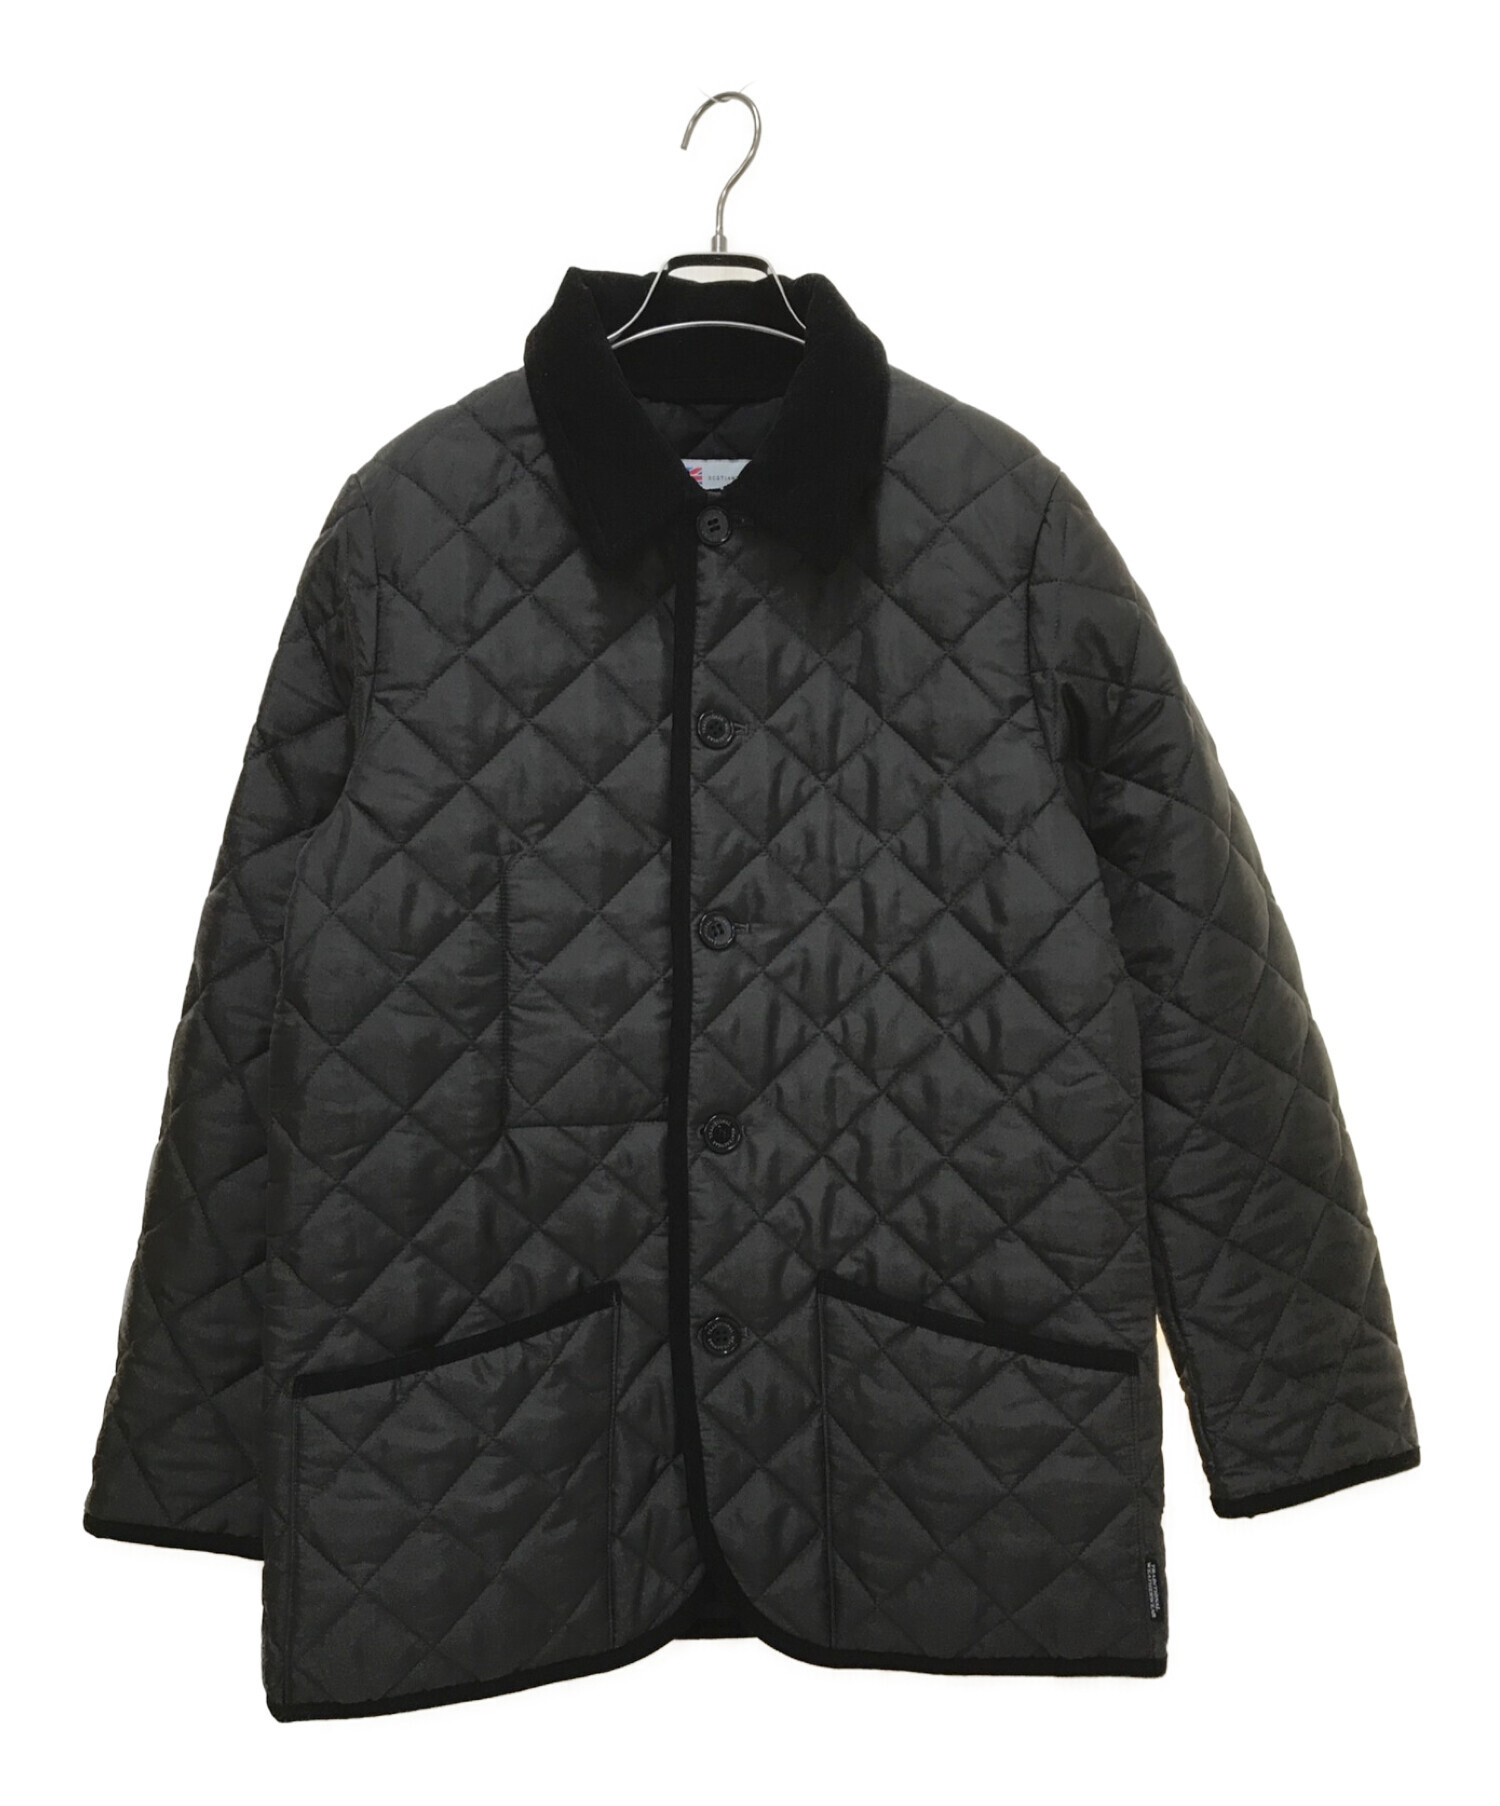 カラーブラック黒BEAMS別注 トラディショナルウェザーウェア キルティングジャケット